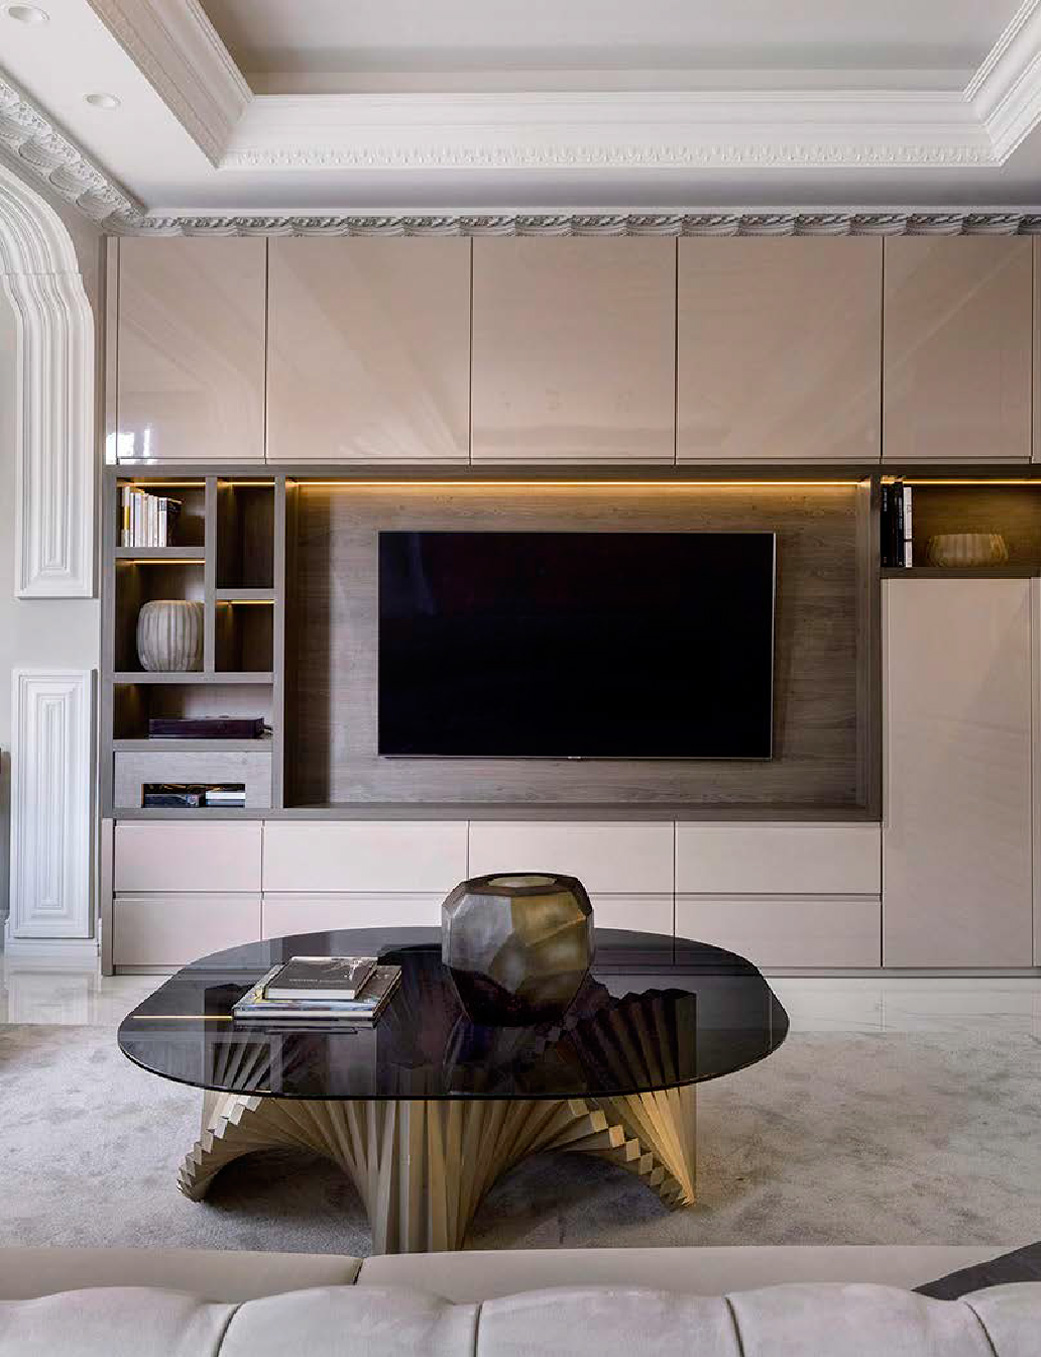 Mueble televisor empotrado en la pared fabricado a medida y personalizado para proyecto de decoración de un piso de alta gama.